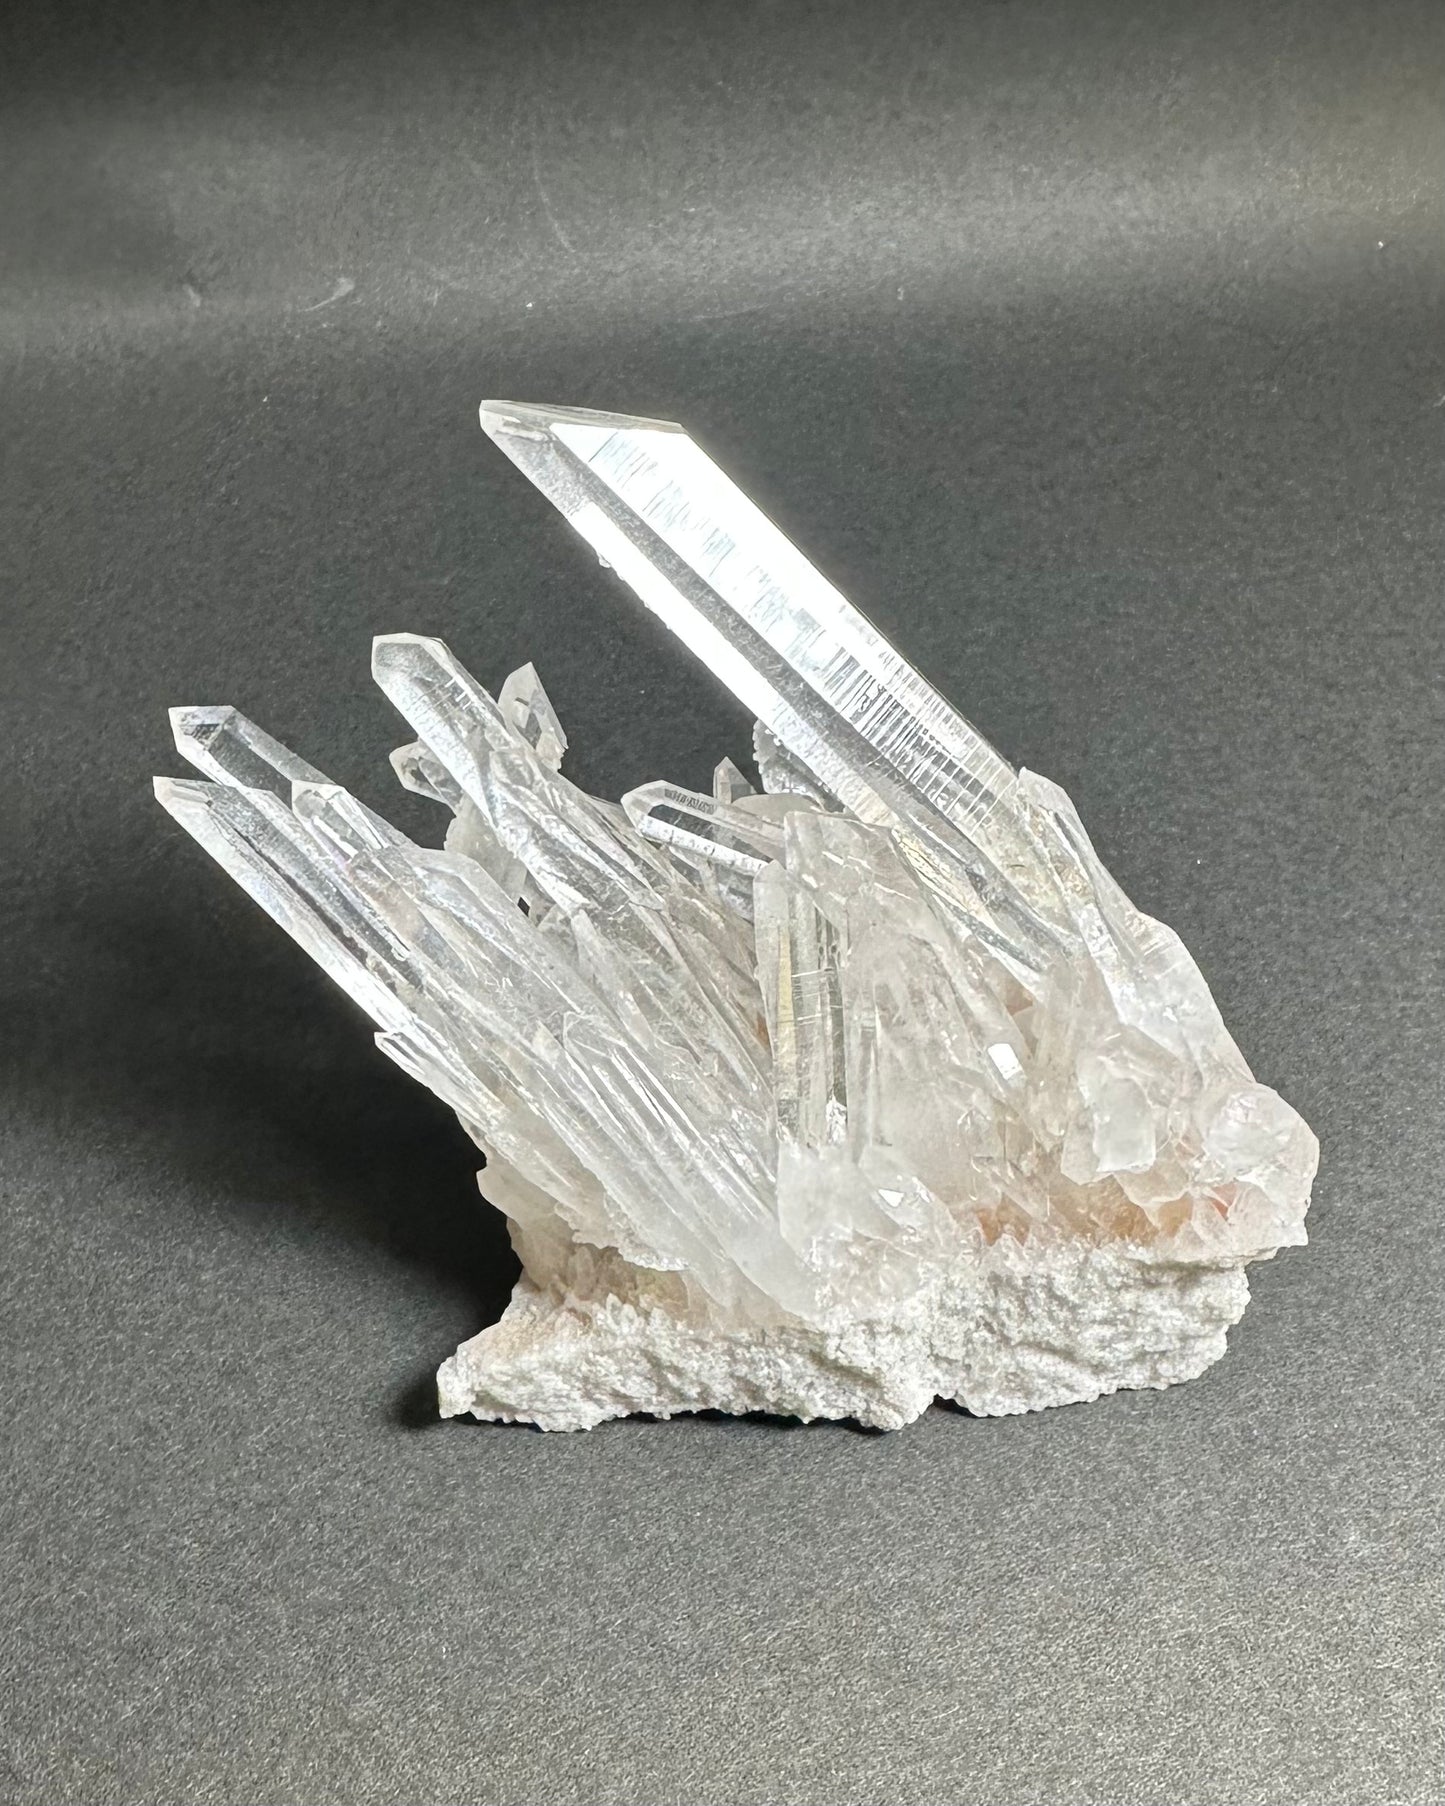 アーカンソー州産水晶クラスター